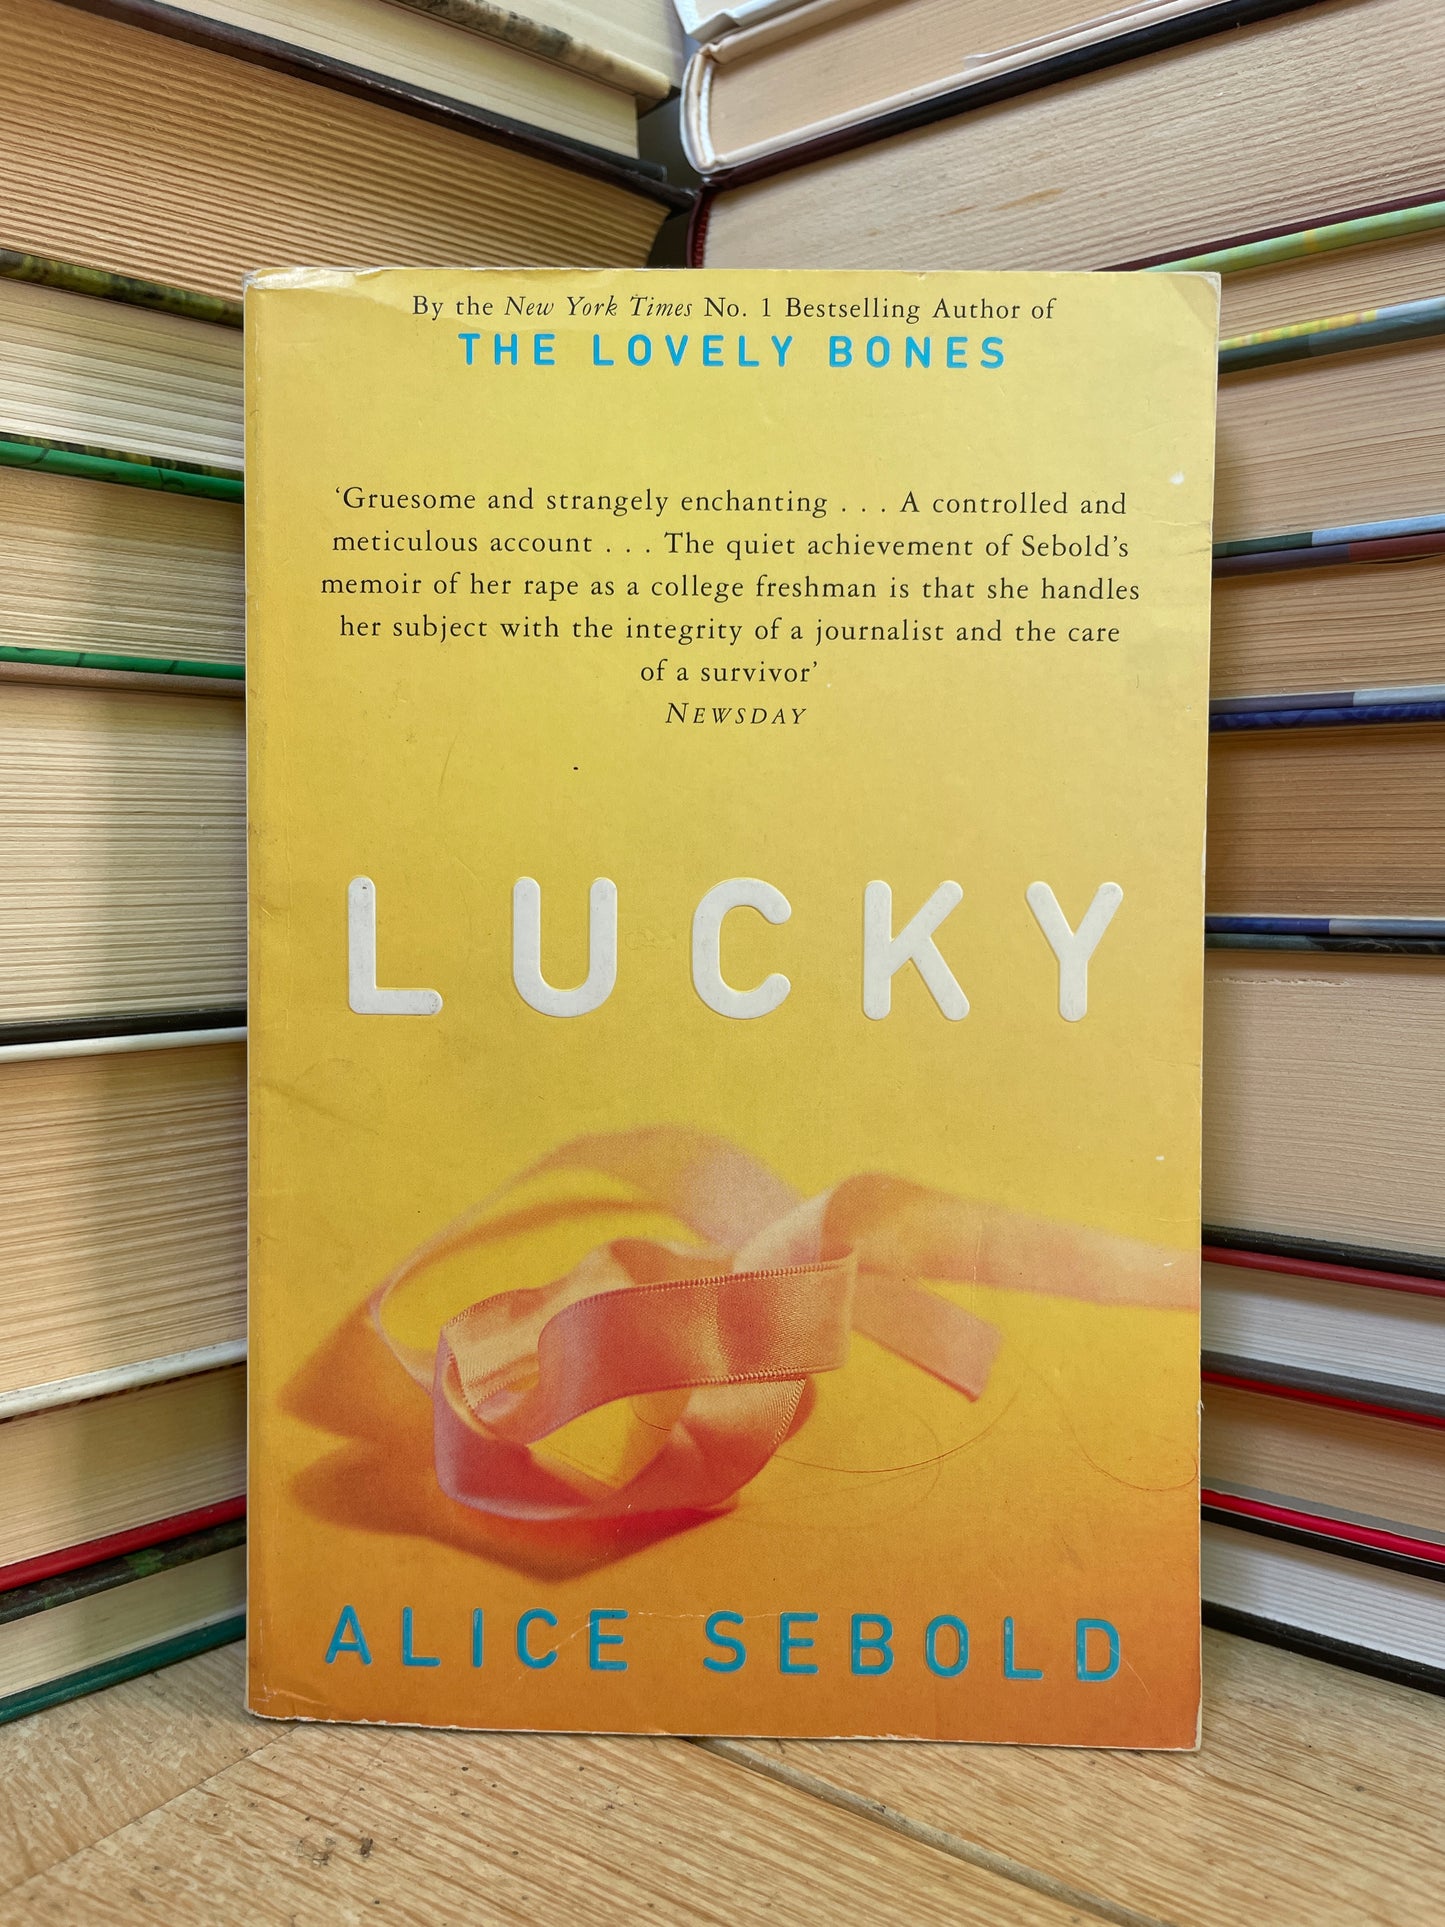 Alice Sebold - Lucky